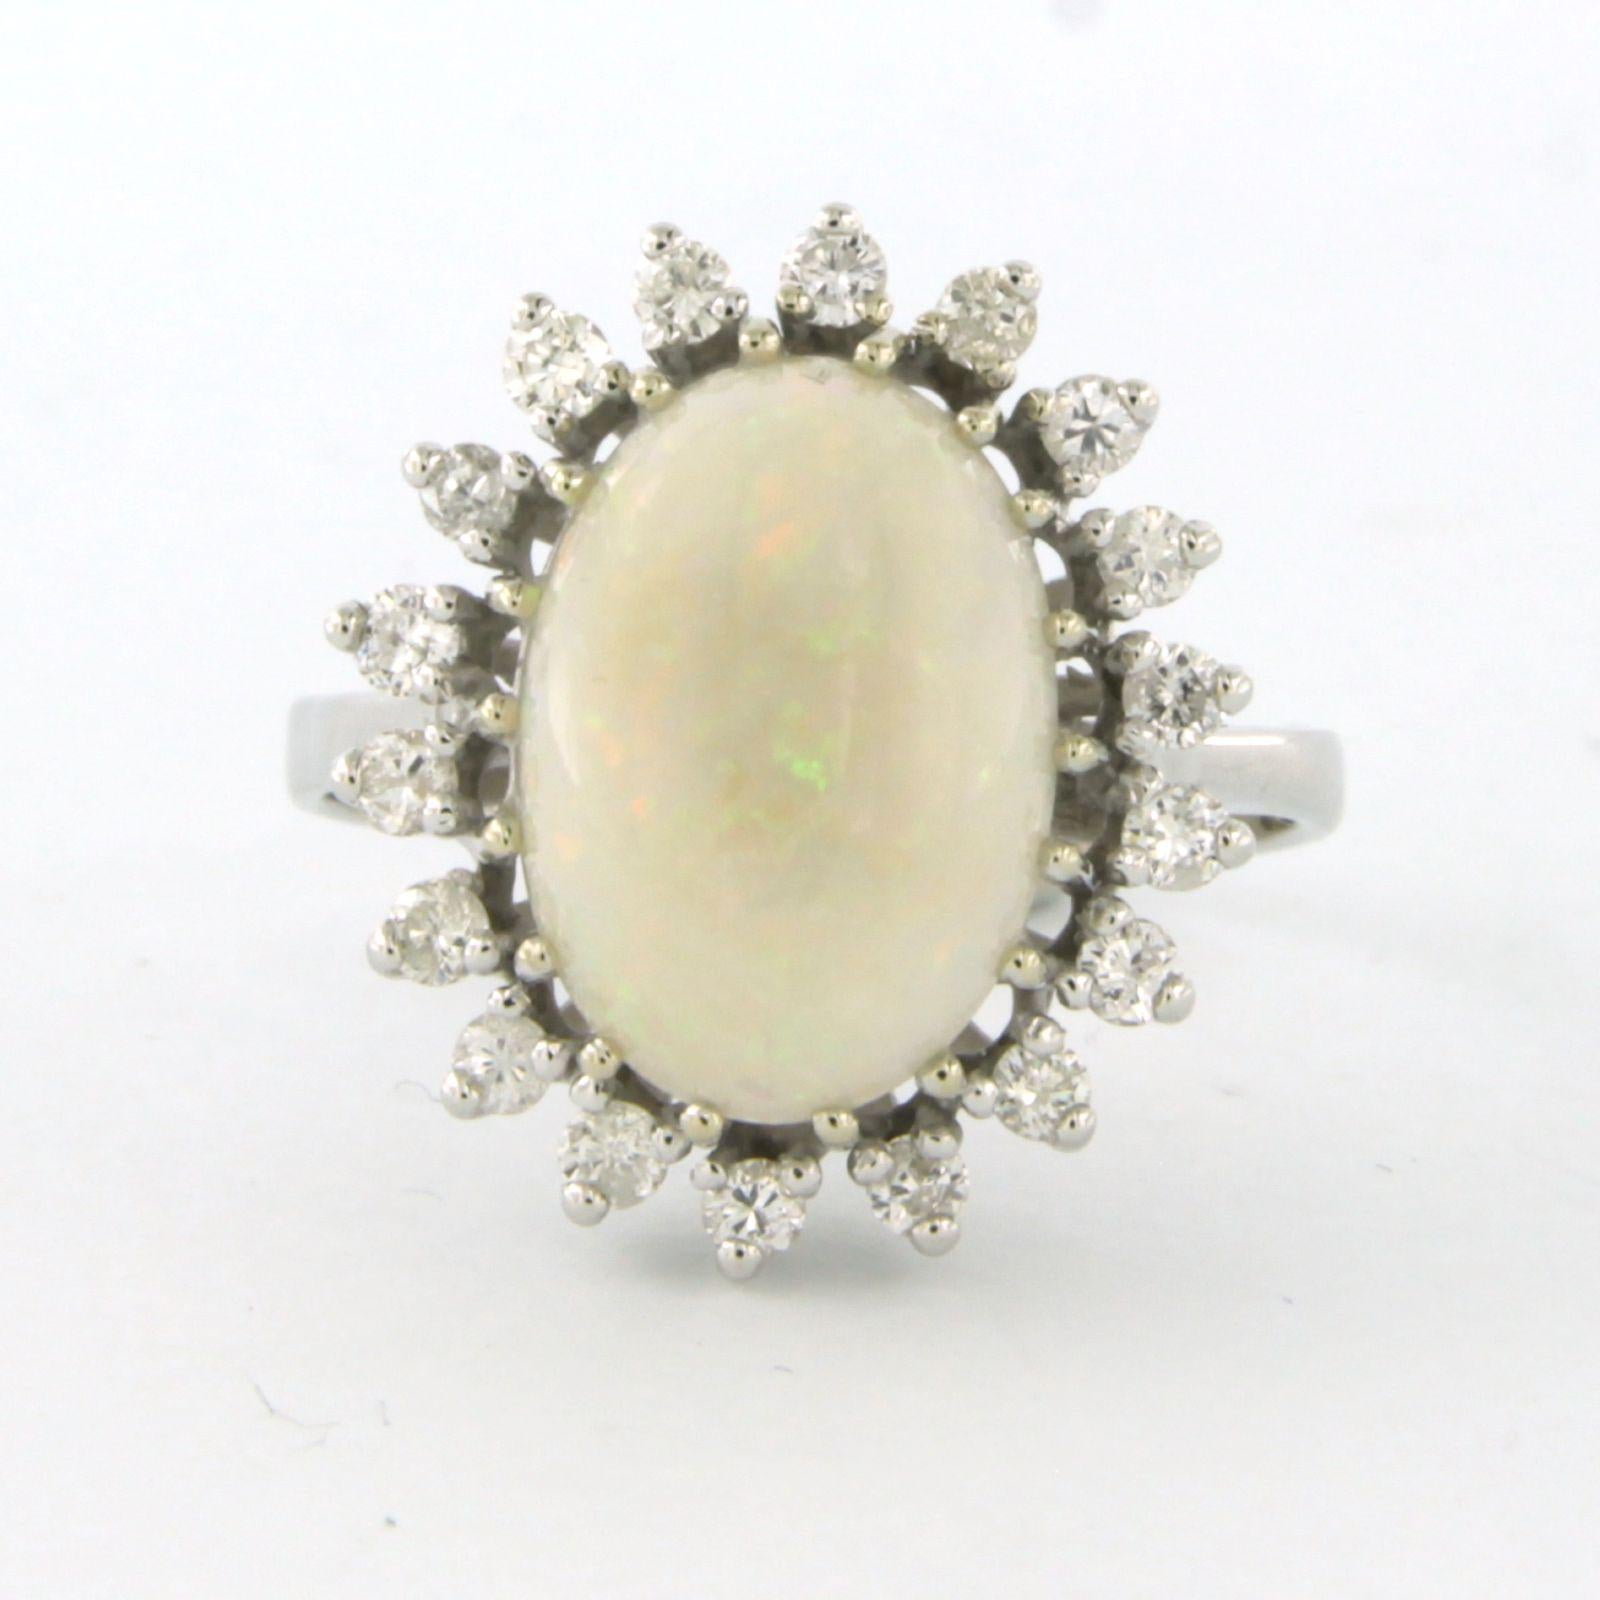 Ring aus 14 Karat Weißgold, besetzt mit einem Opal und Diamanten im Brillantschliff. 0.54ct - F/G - VS/SI - Ringgröße U.S. 8 - EU. 18.25(57)

detaillierte Beschreibung:

Die Oberseite des Rings ist 2,0 cm mal 1,7 cm breit mal 1,1 cm hoch

Ringgröße